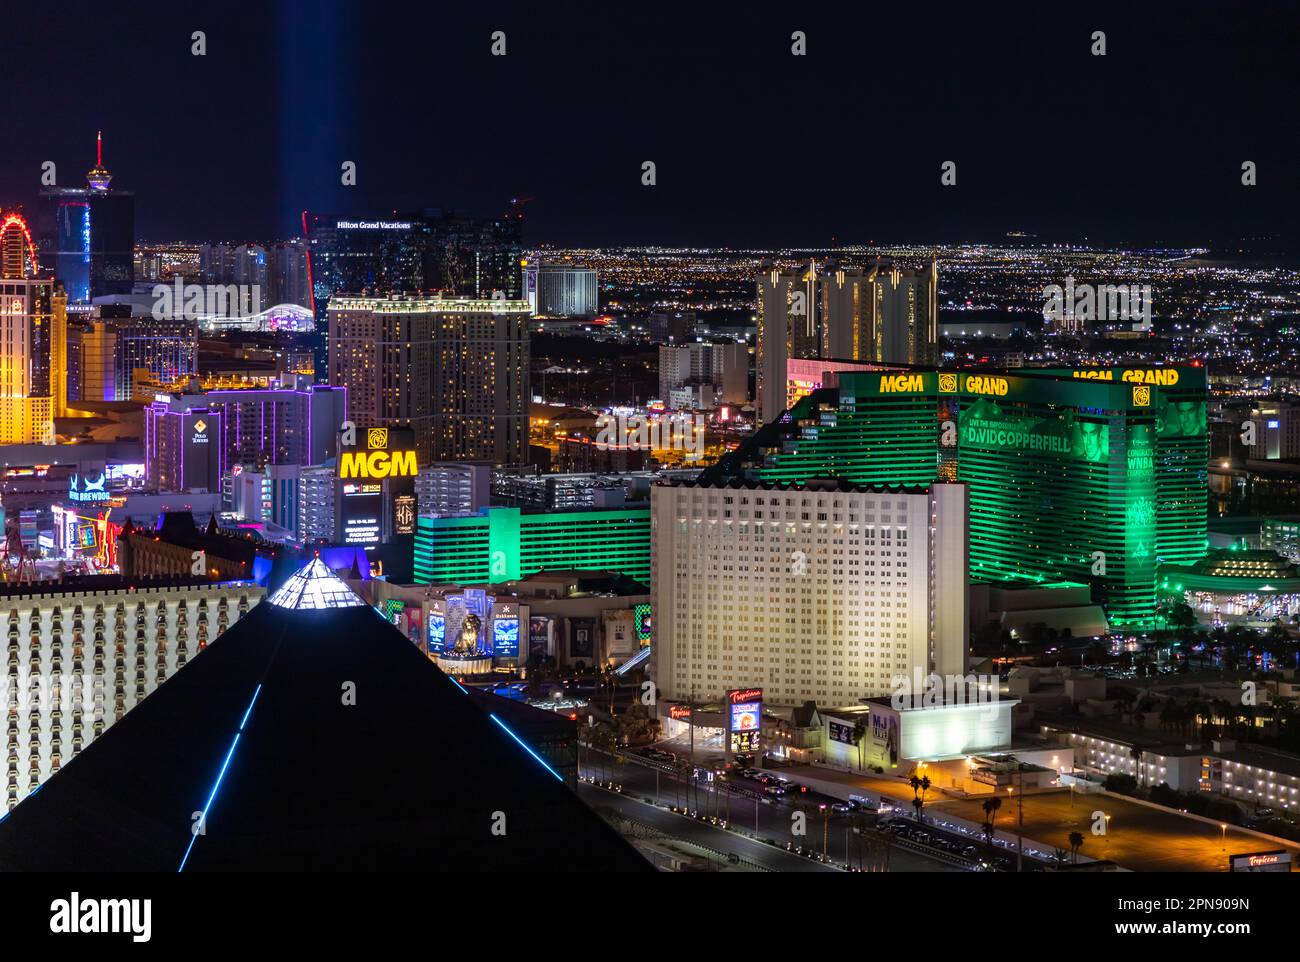 Ein Bild von Las Vegas bei Nacht, das das MGM Grand, das Tropicana Las Vegas - A DoubleTree by Hilton Hotel und die Spitze der Pyramide des Luxor zeigt Stockfoto